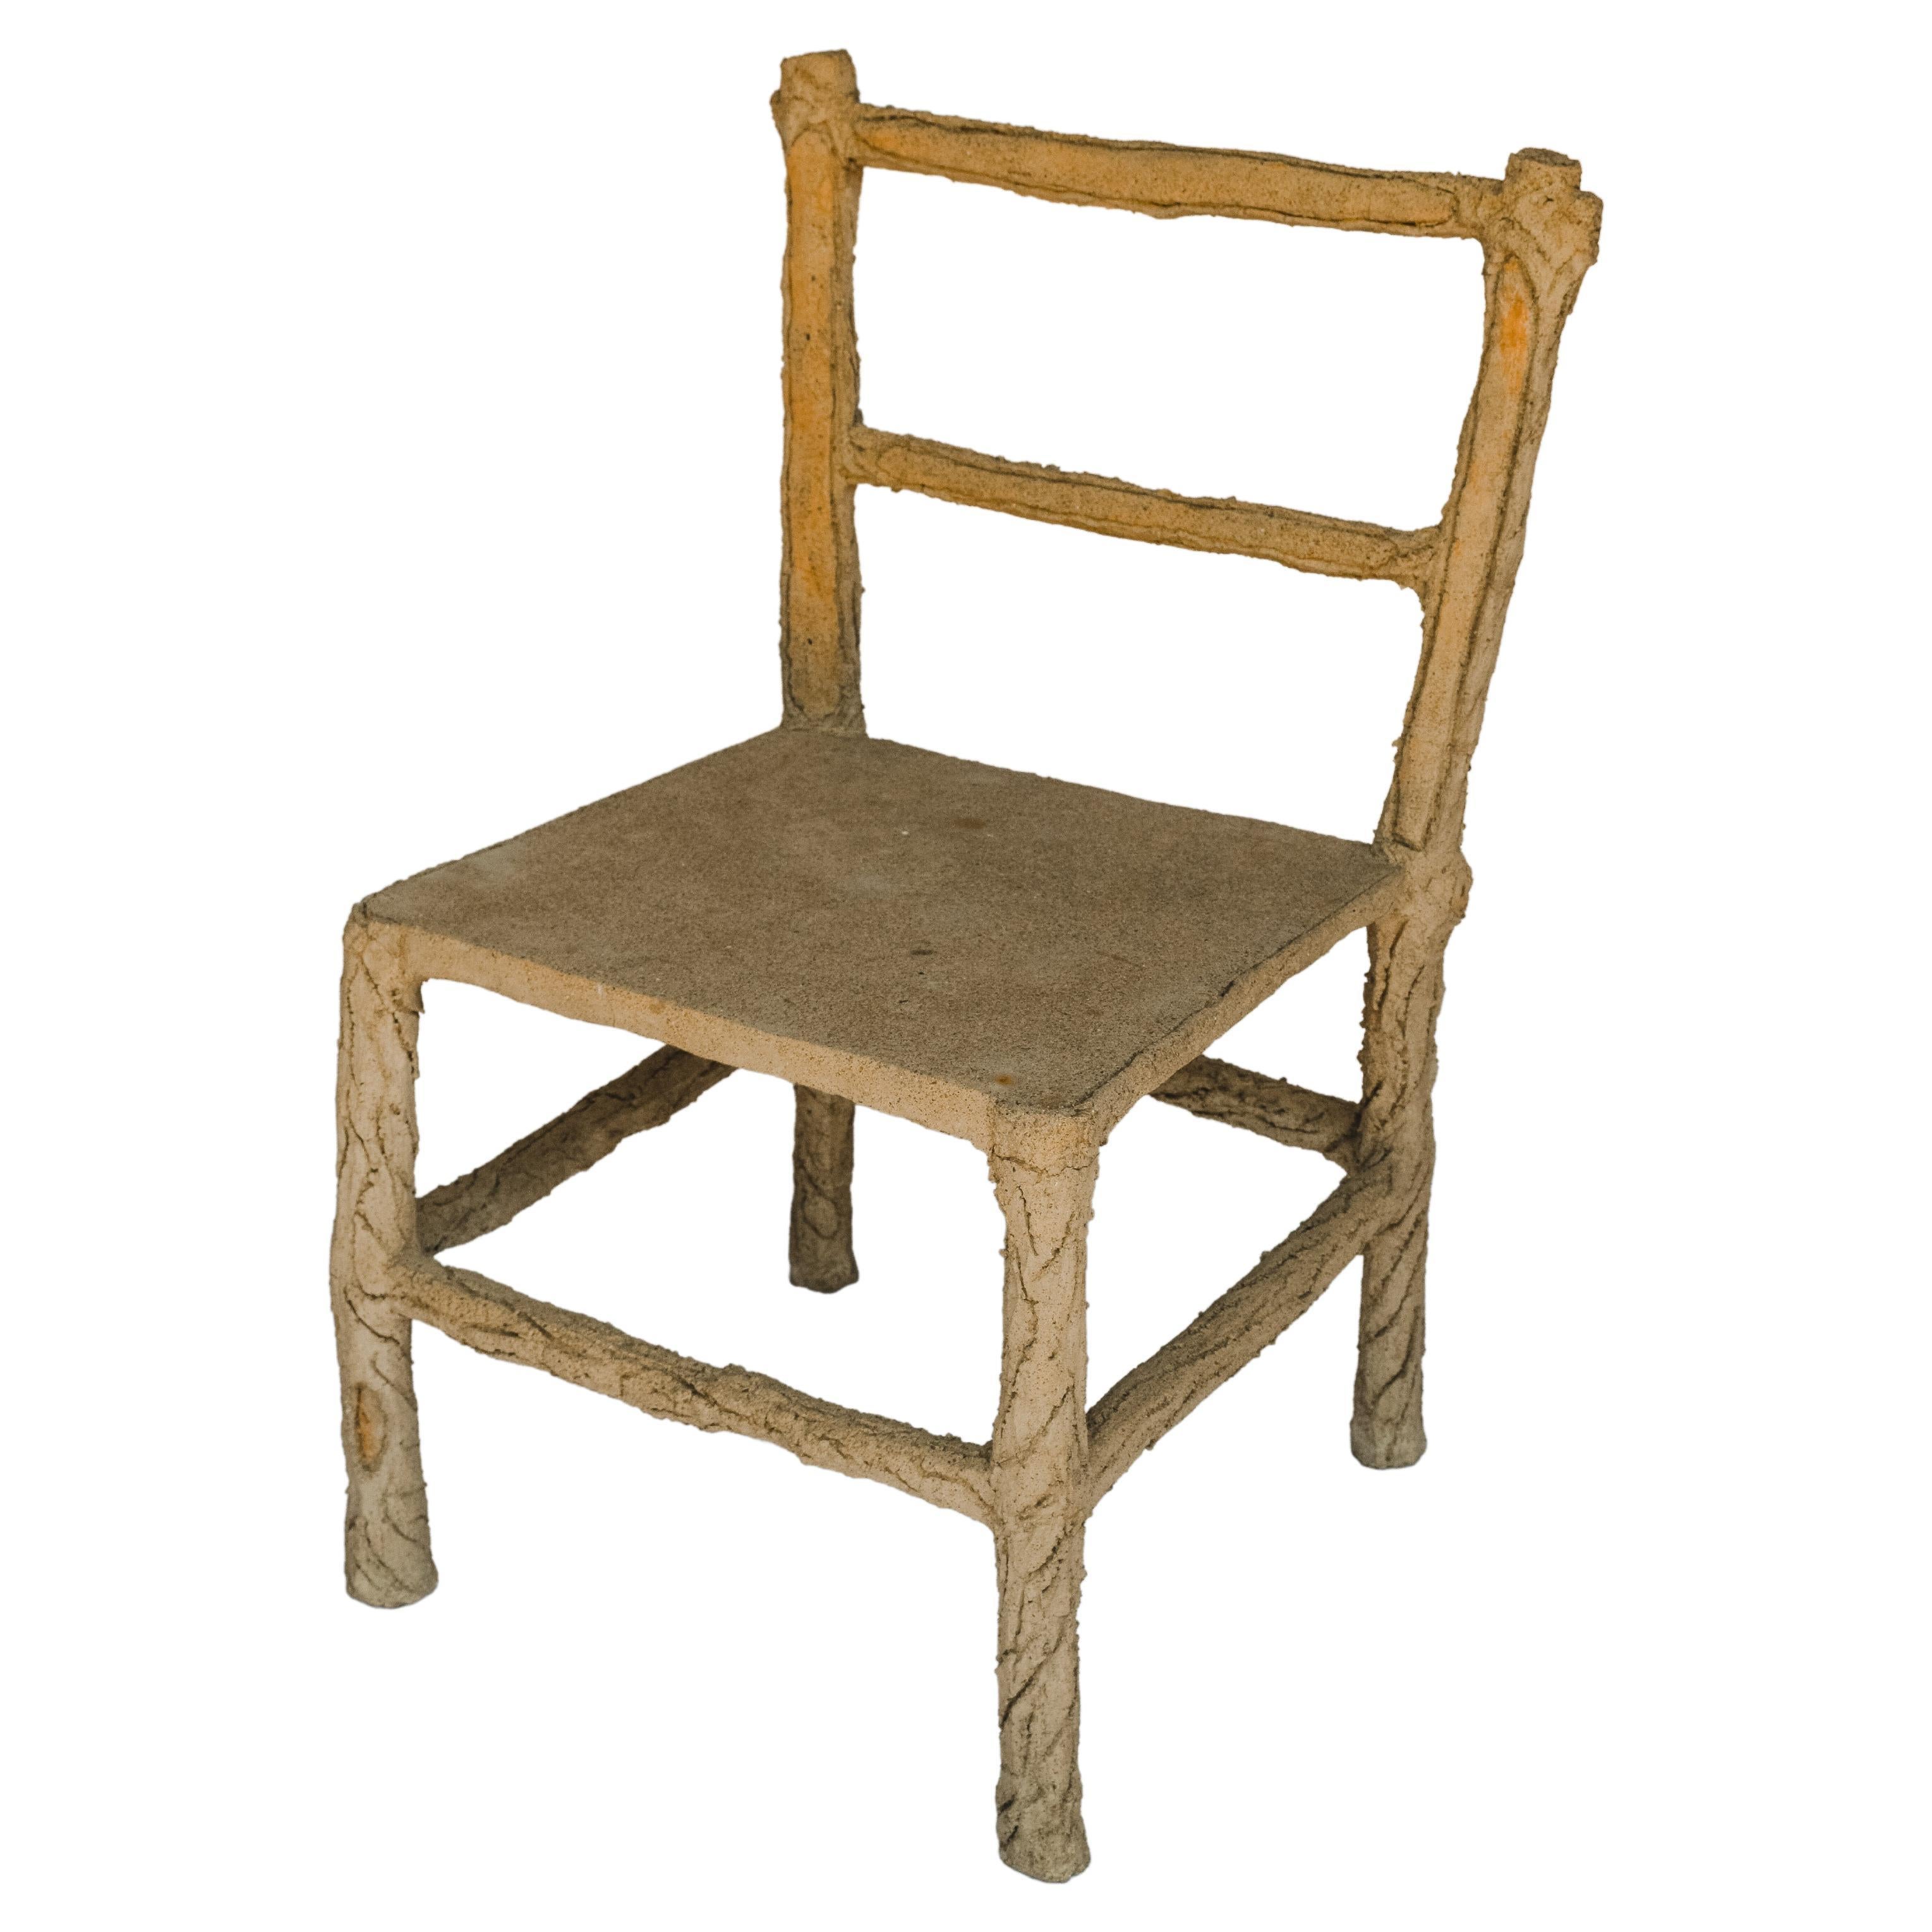 Faux Bois Garden Chair For Sale